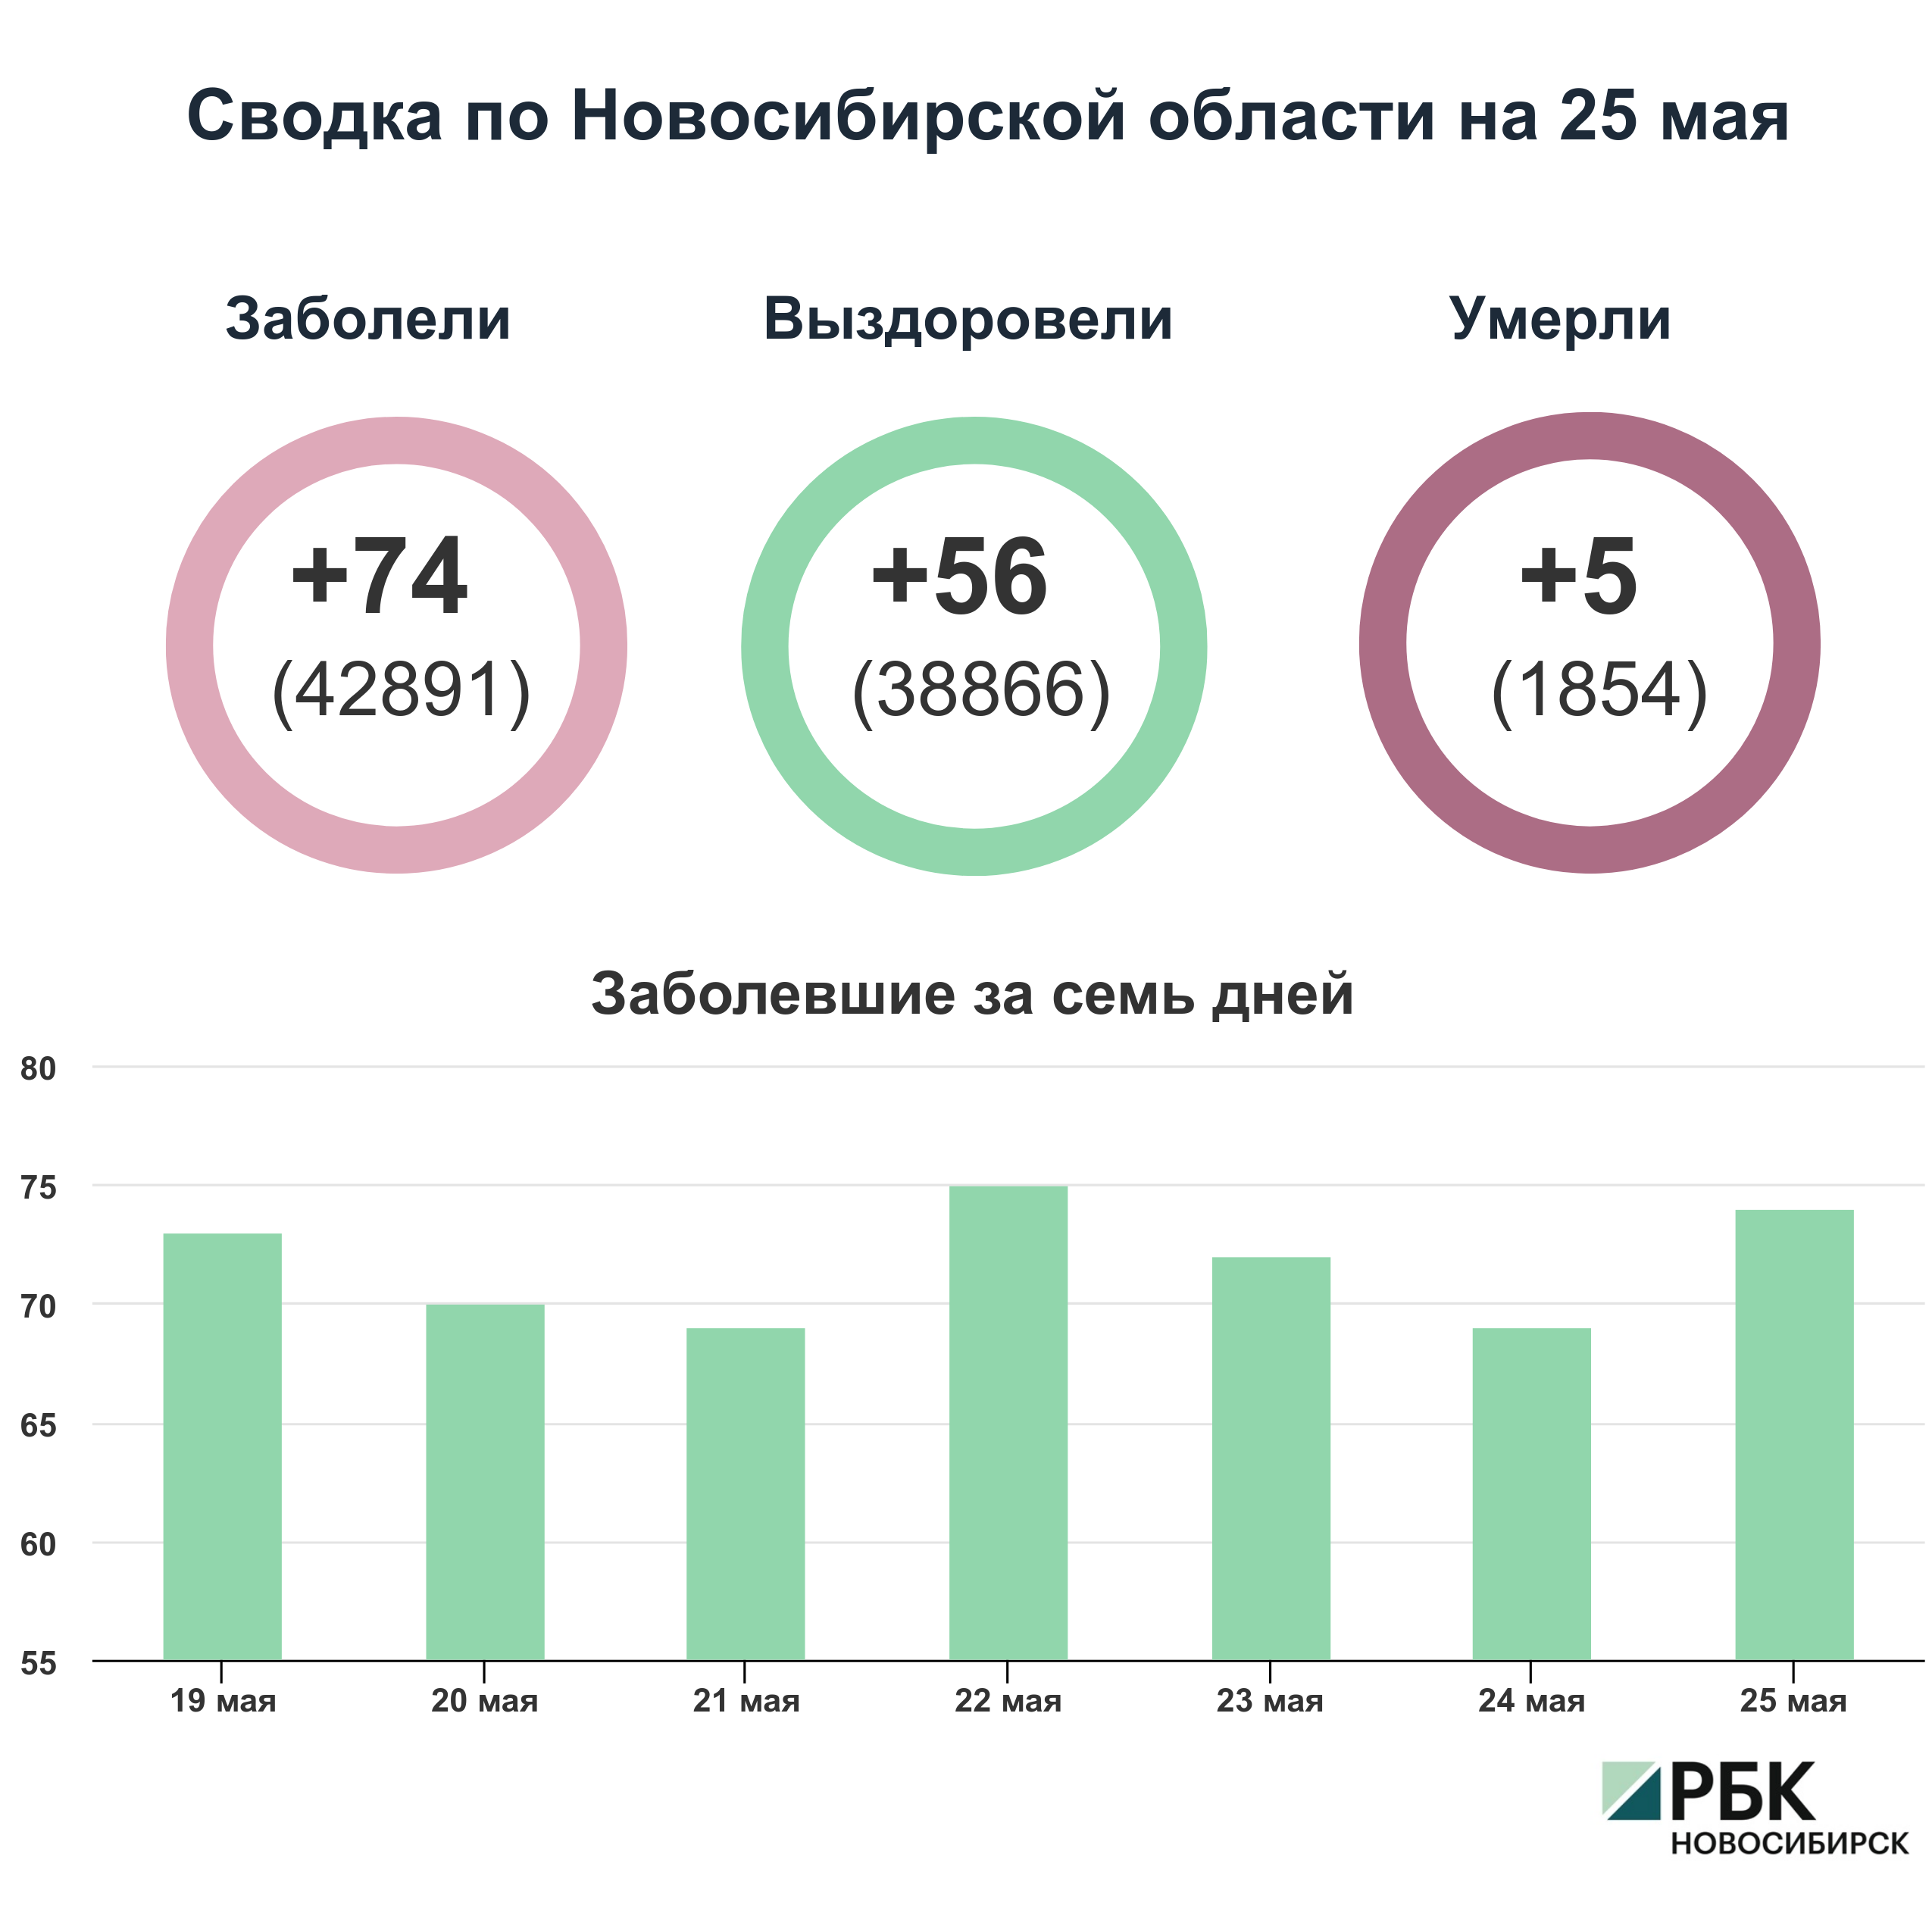 Коронавирус в Новосибирске: сводка на 25 мая